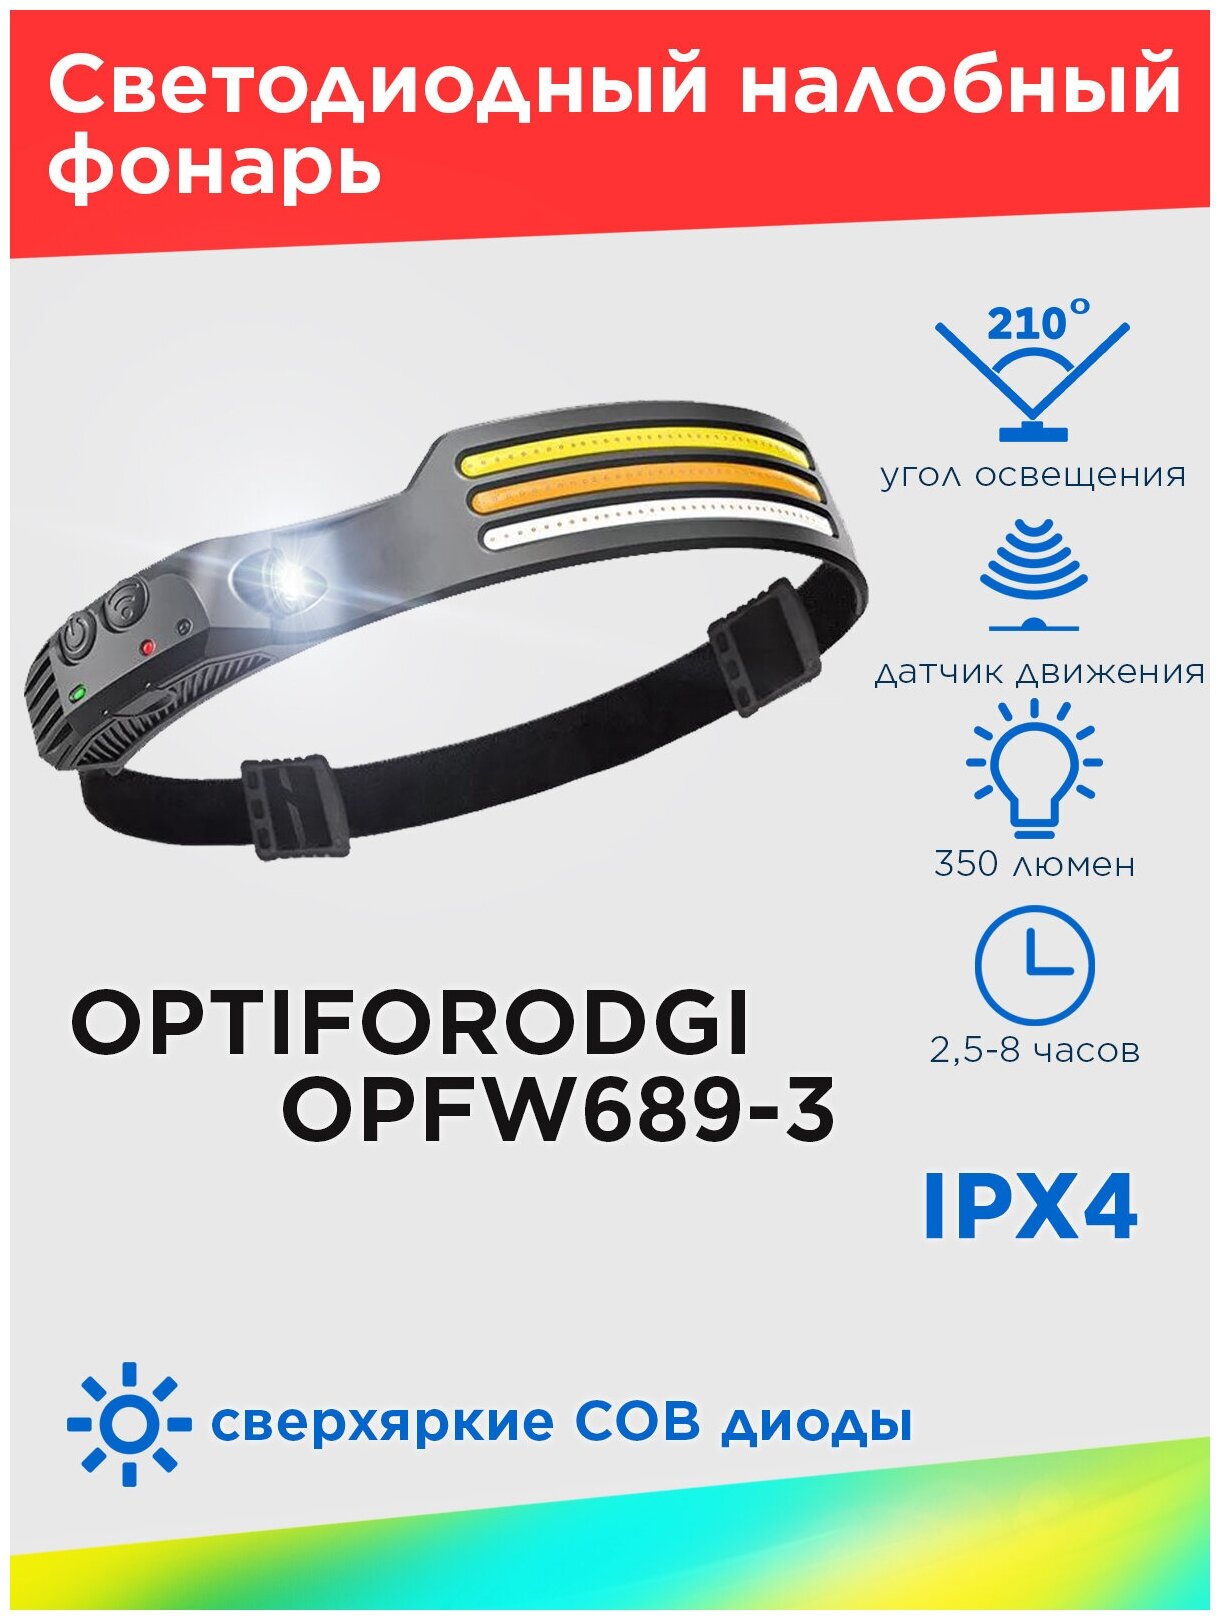 Налобный фонарь OPTIFORODGI OPFW689-3 Multi-Function induction headlamp с сенсорным датчиком включения. Цвет черный